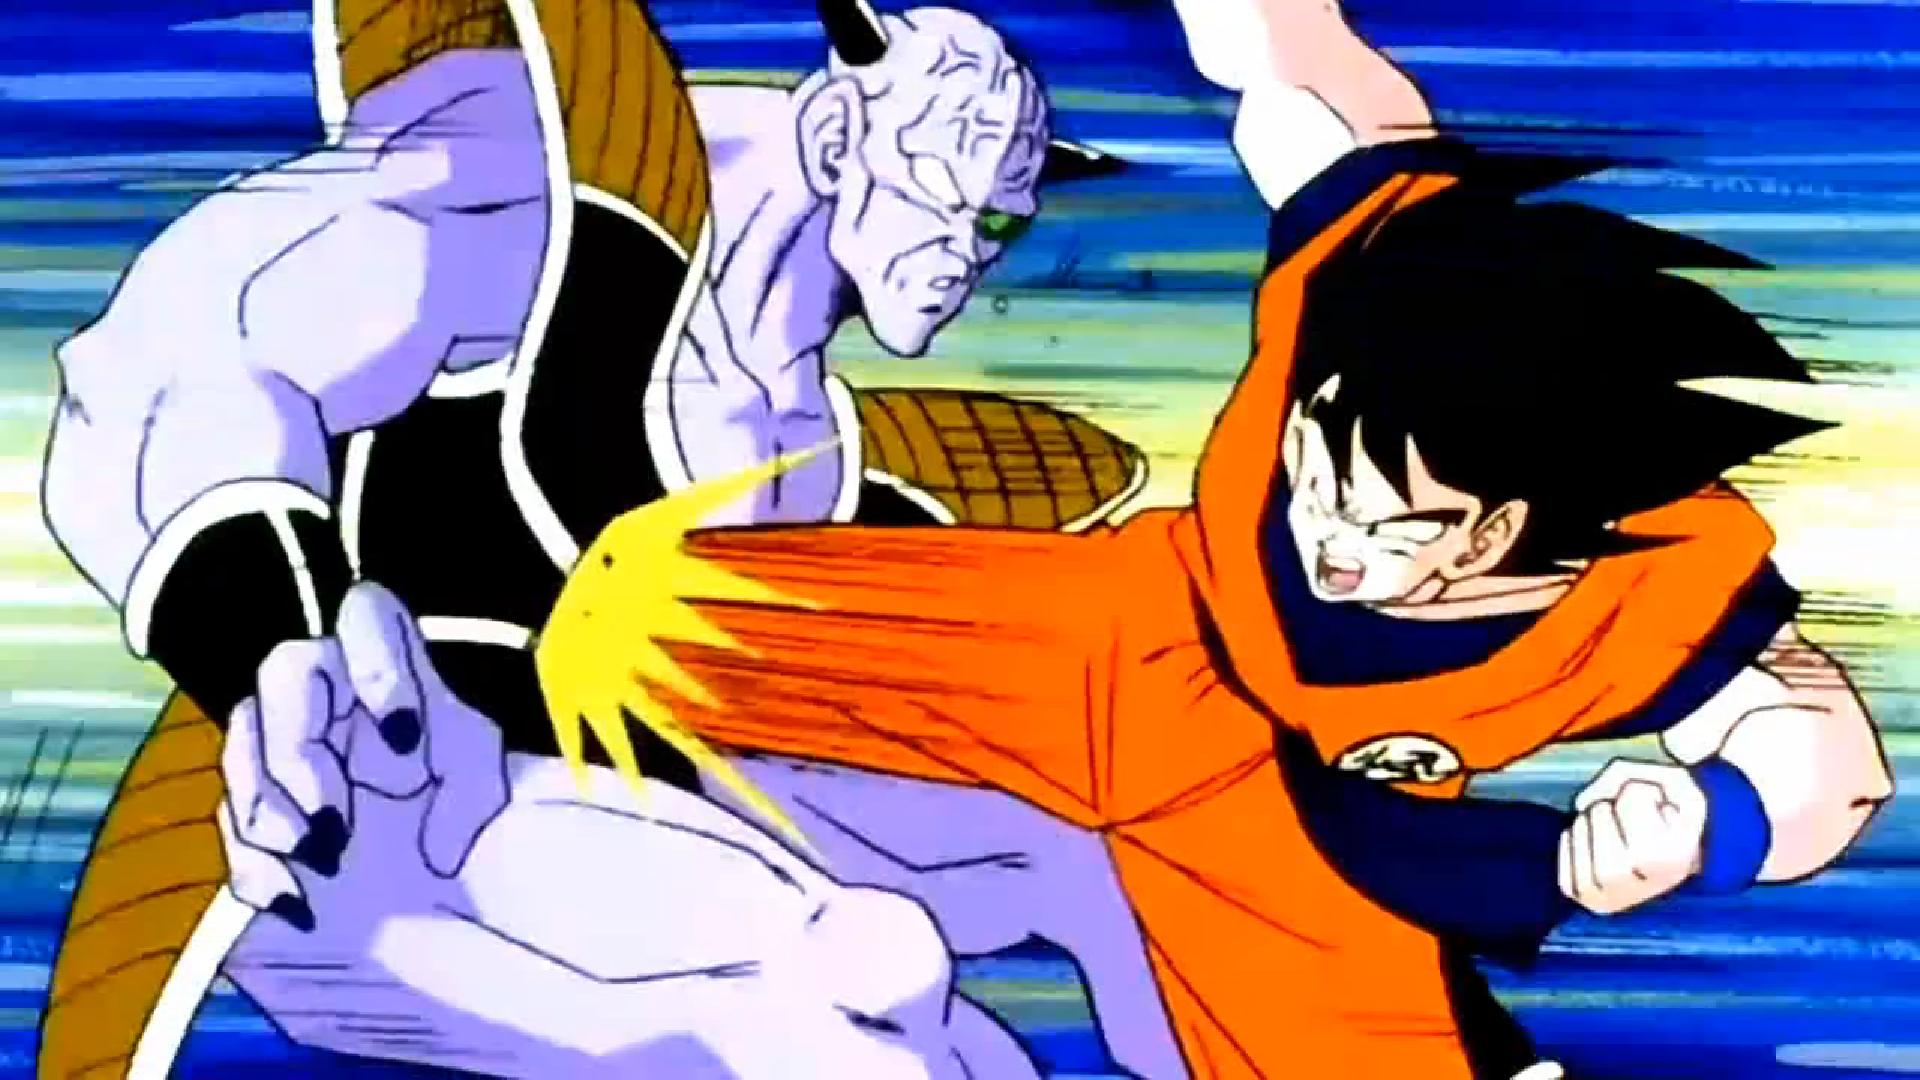 Goku lutut Ginyu di usus.